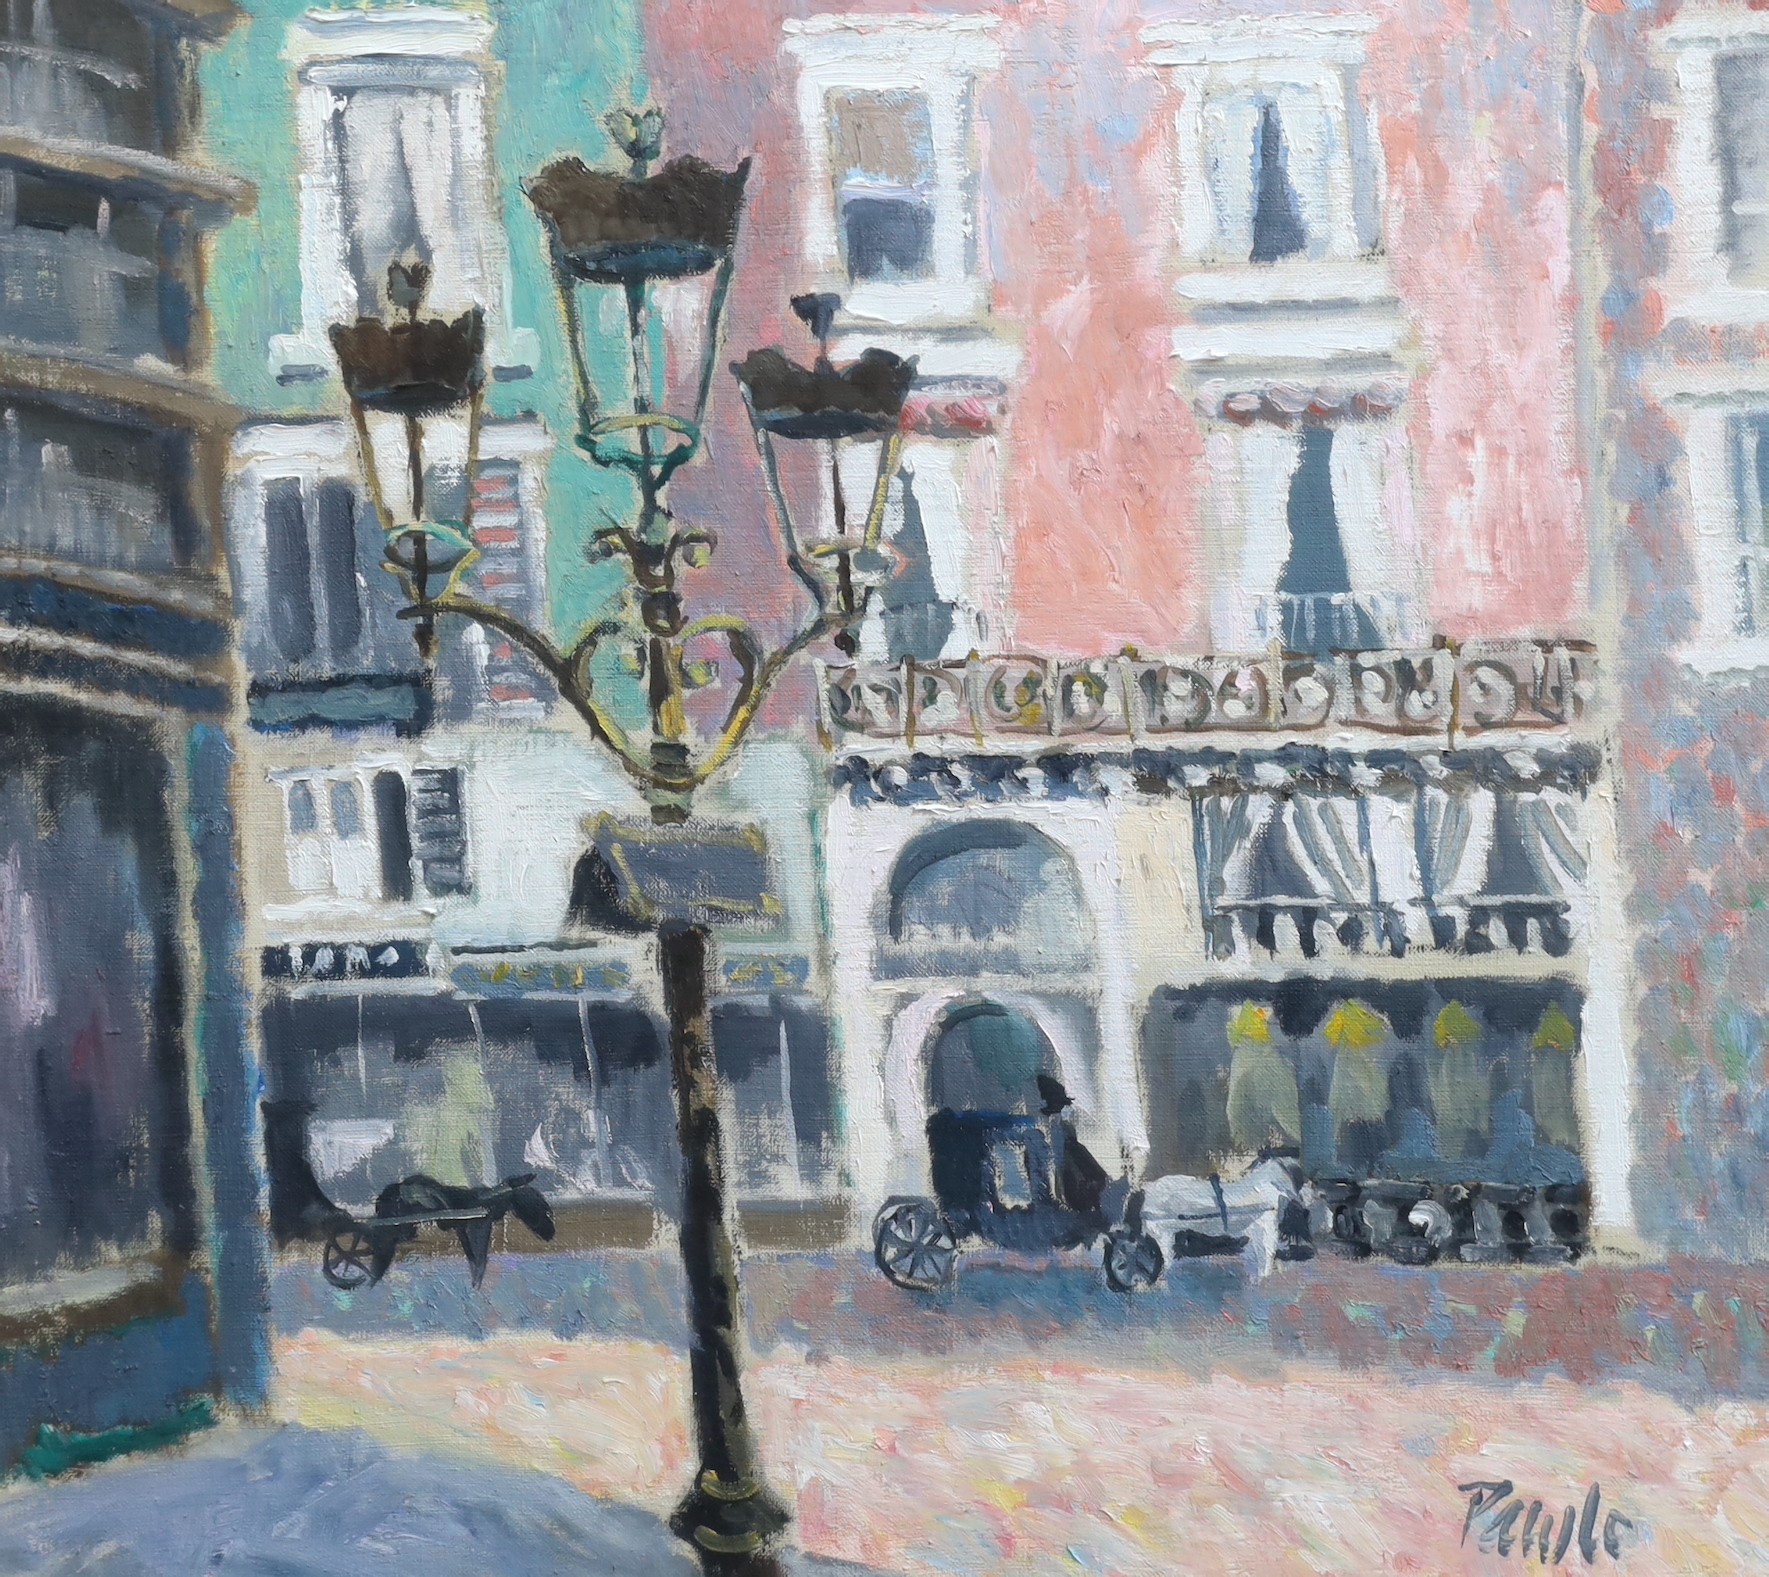 John Pawle (1915-2010), 'Rue de La Paix', oil on canvas, 46 x 51cm